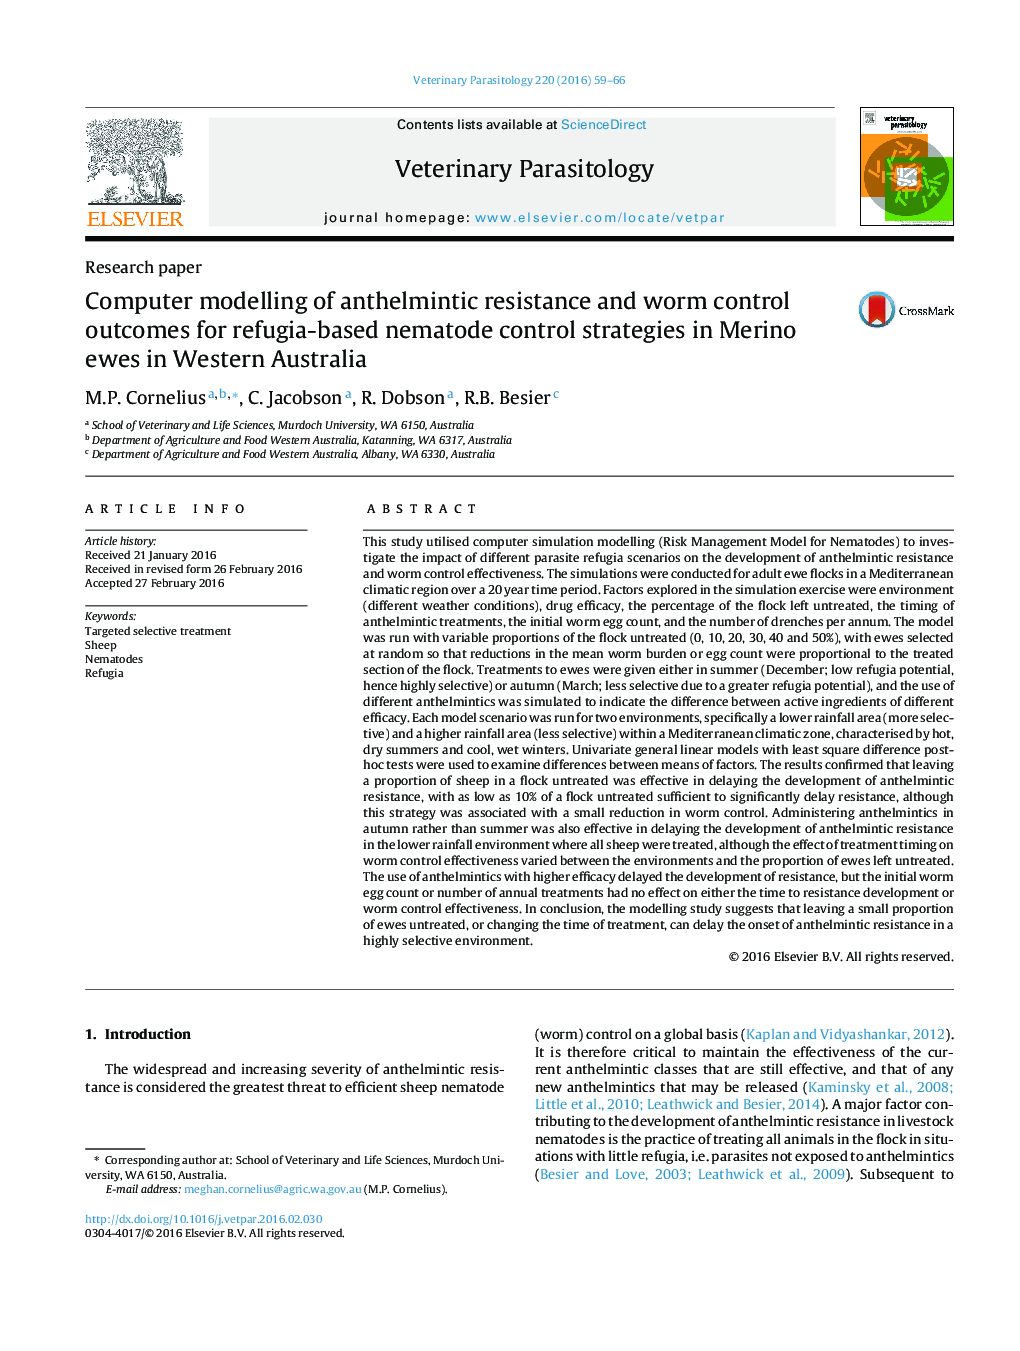 مدل سازی کامپیوتری مقاومت مقاوم به آنترومتری و نتایج کنترل کرم برای استراتژی های کنترل نماتد مبتنی بر پناهگاه در جوندگان مریینو در استرالیا غربی 